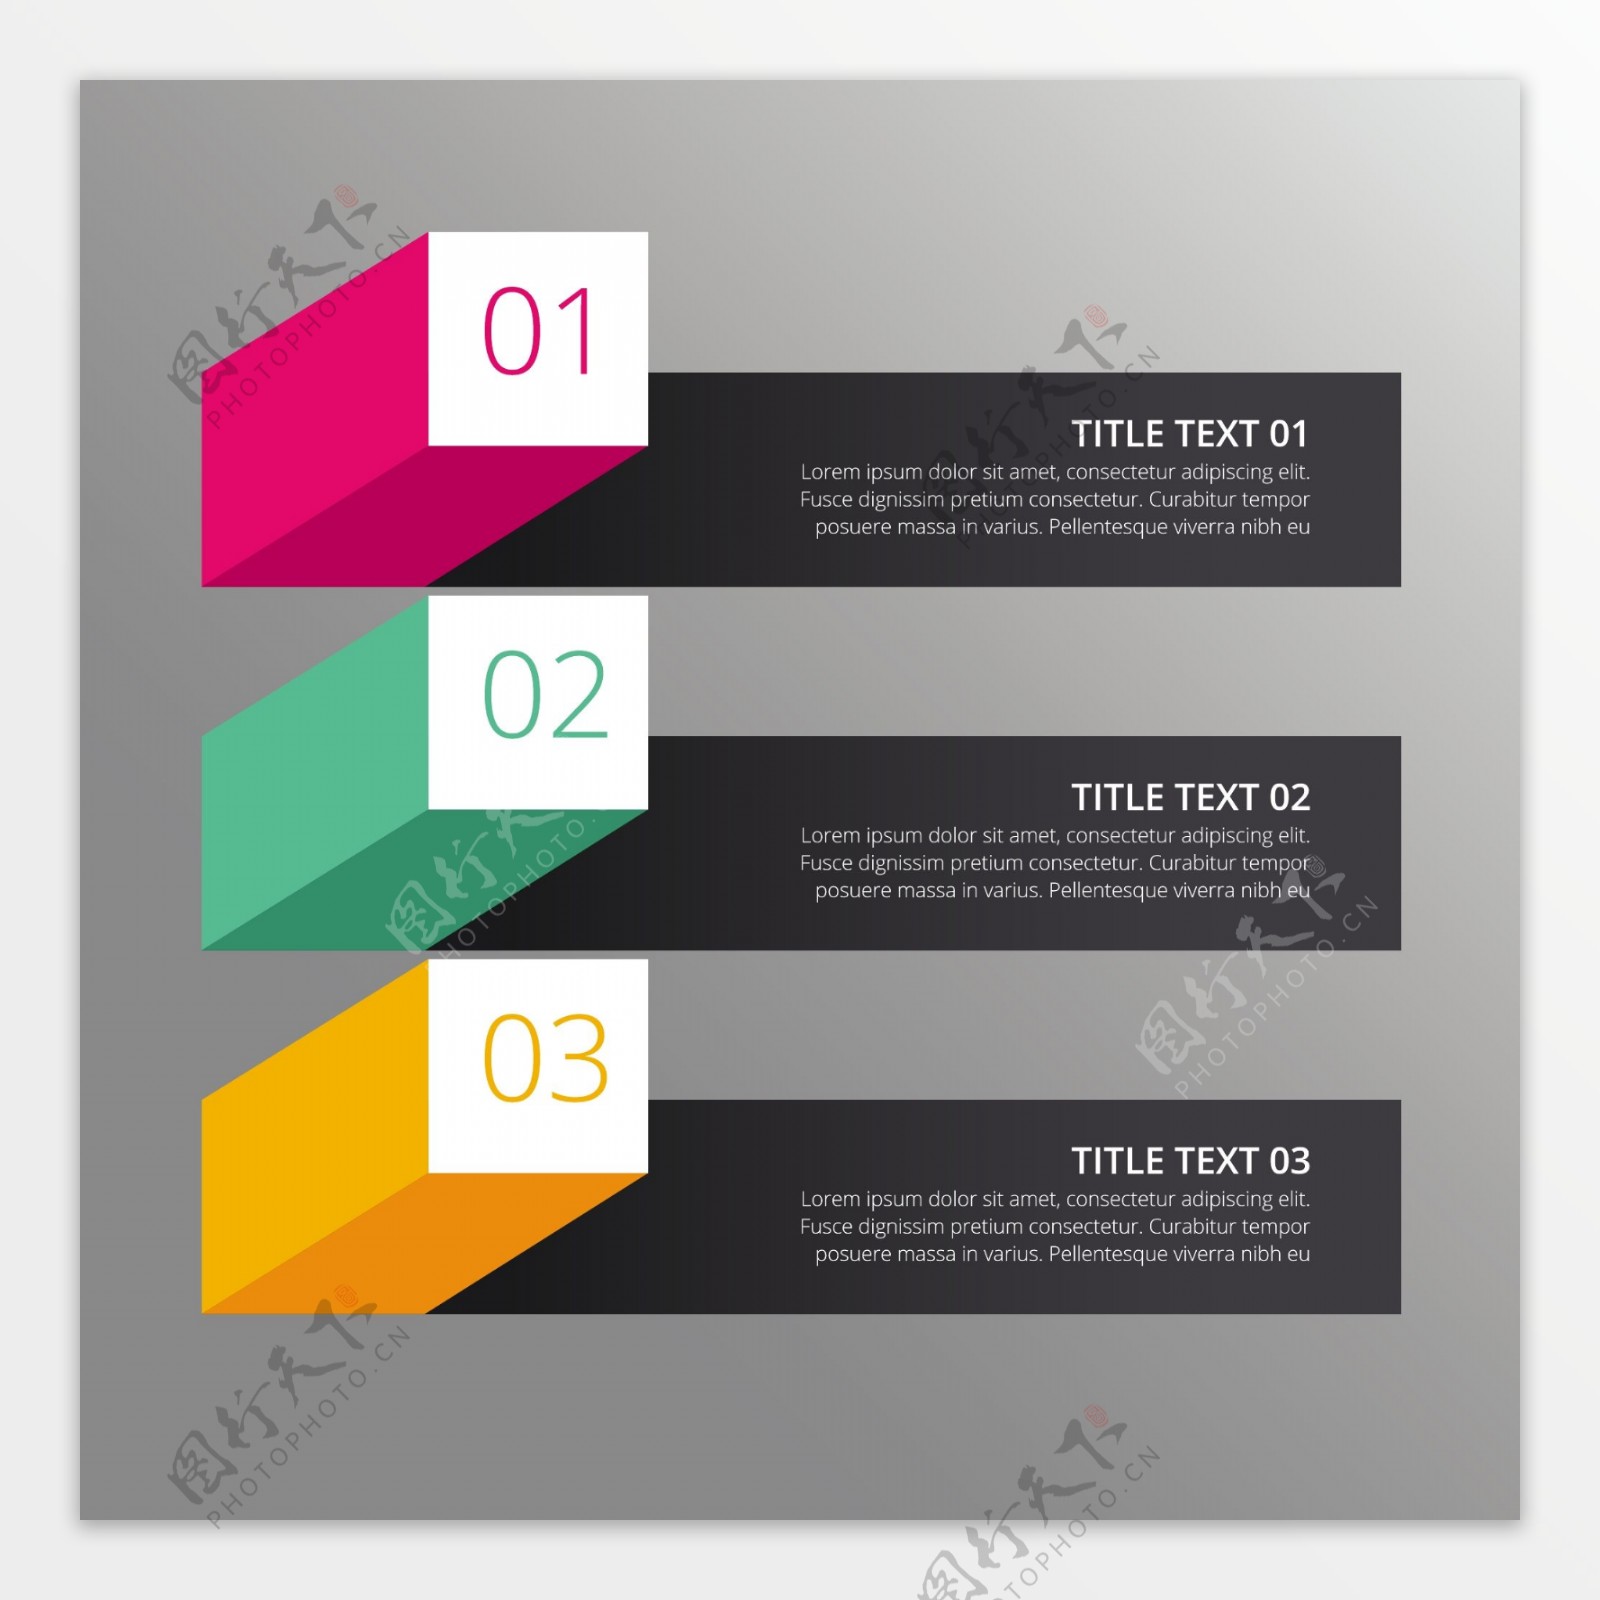 步骤infograph设计不同颜色以三维方式